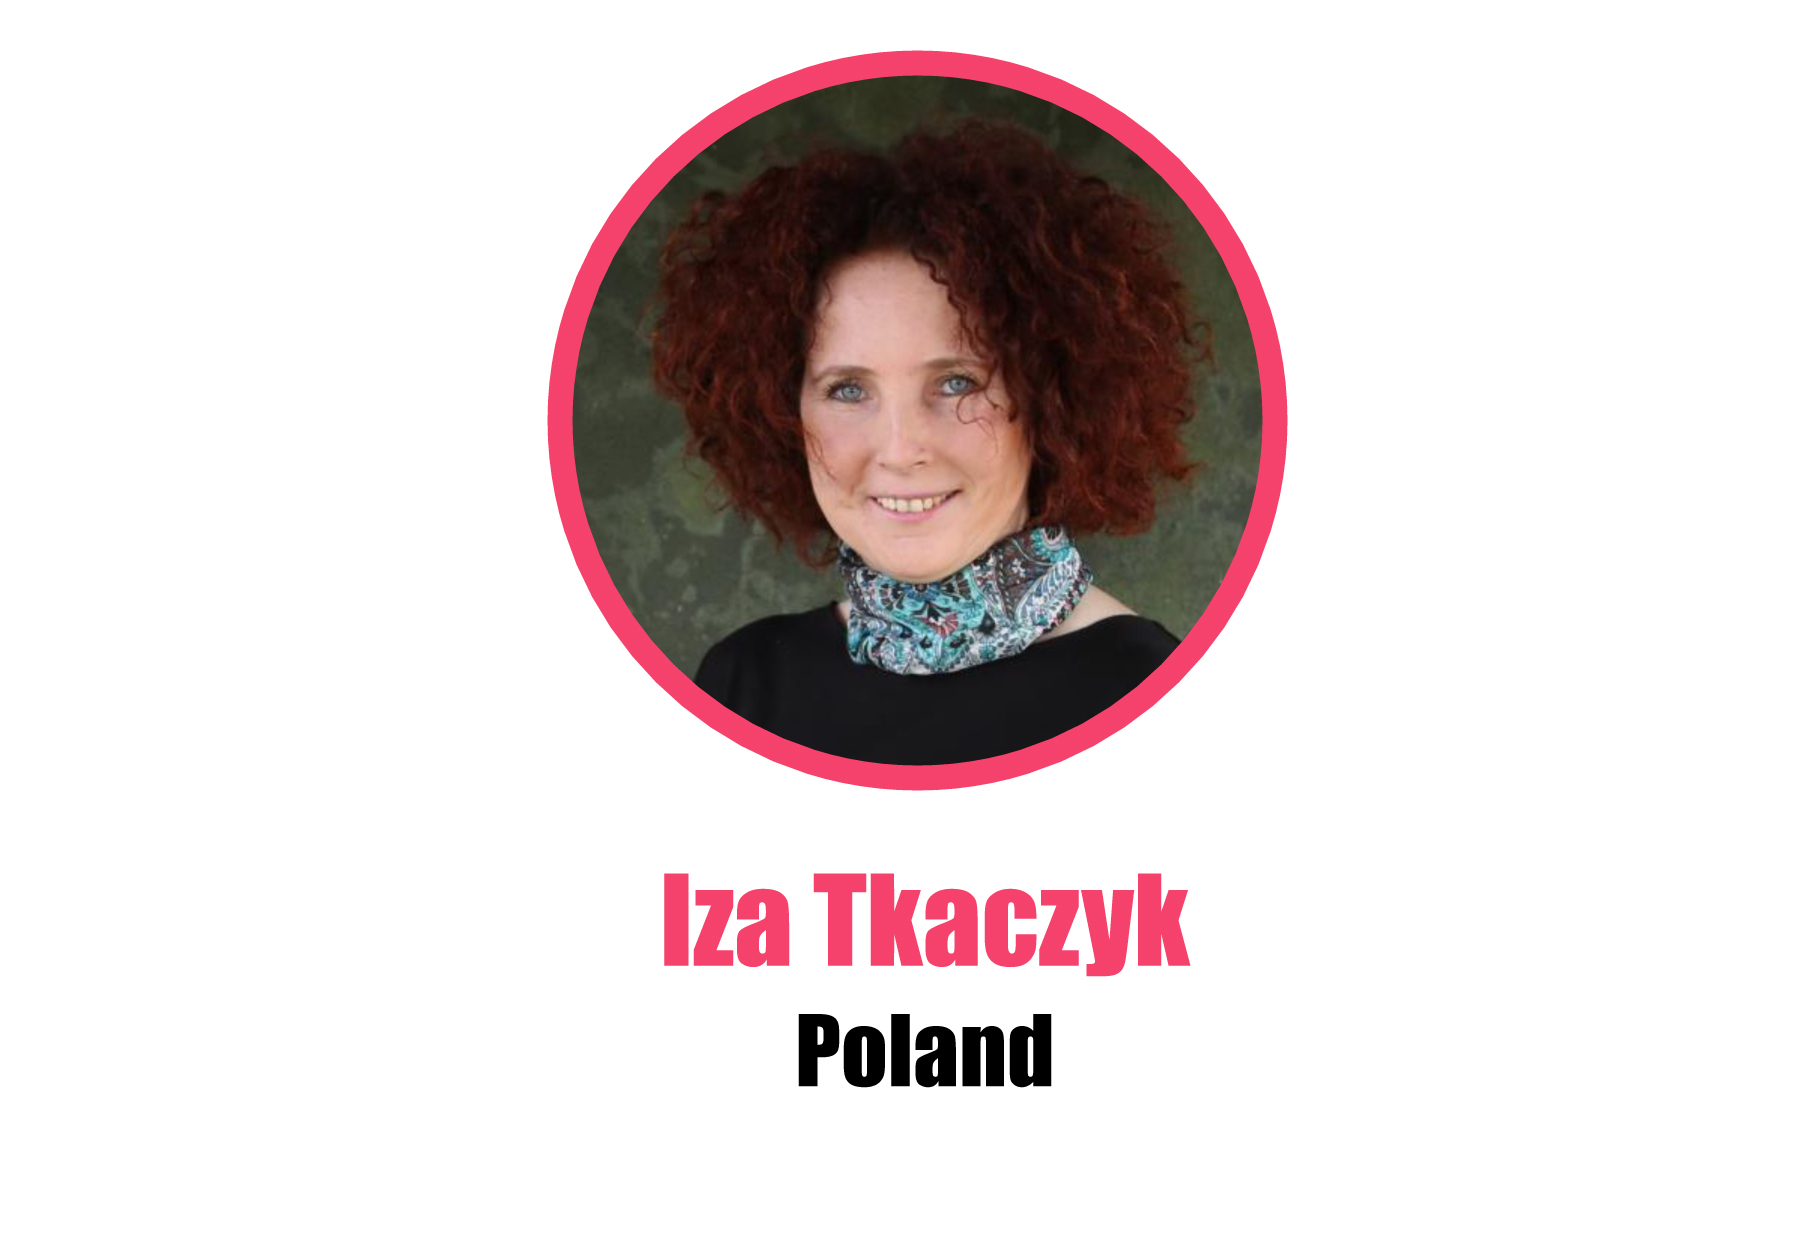 Poland_Iza Tkaczyk